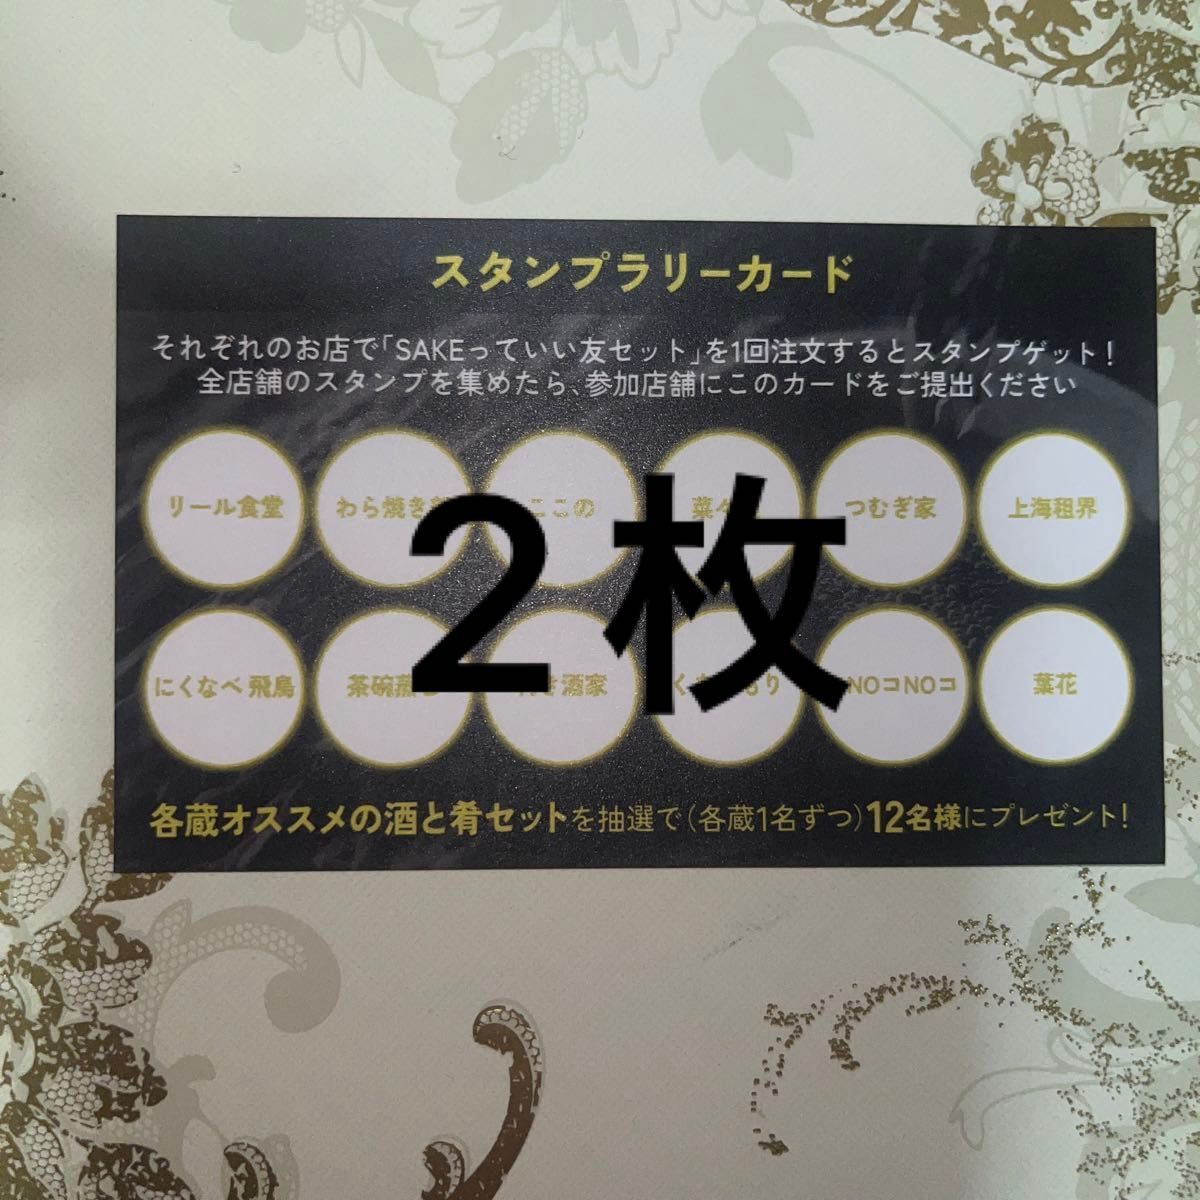 5月11日から26日まで該当店舗でチケット提示で1000円でお店自慢の料理＋酒蔵の日本酒（90ml以上）が楽しめるイベントです。